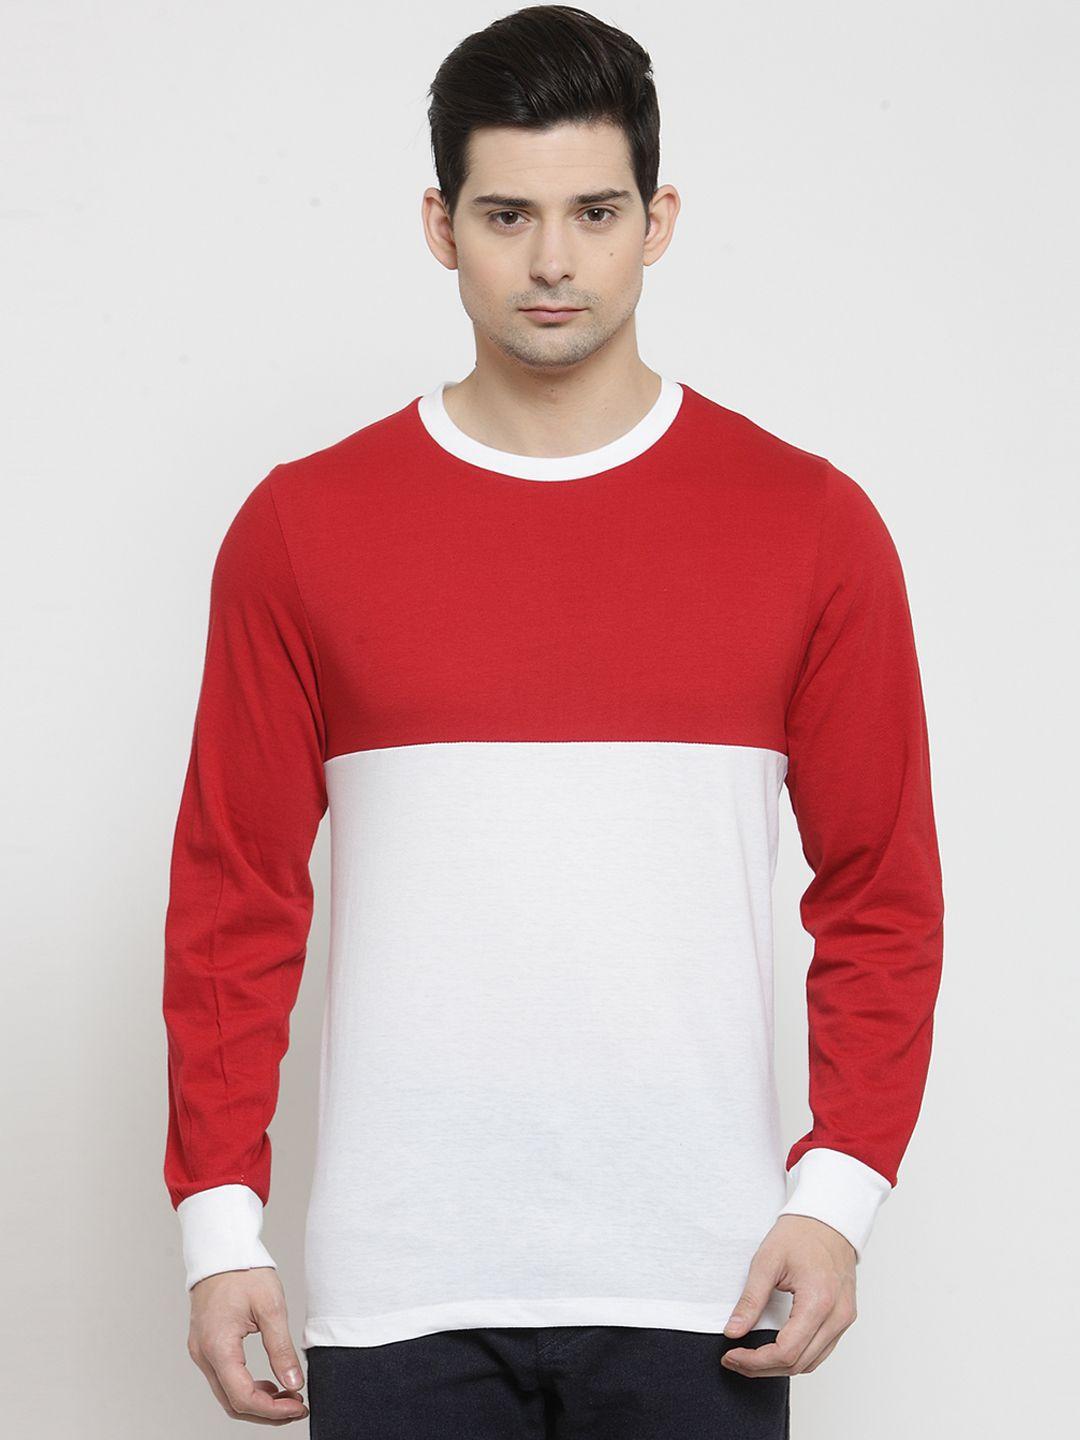 kalt men red & white colourblocked round neck t-shirt